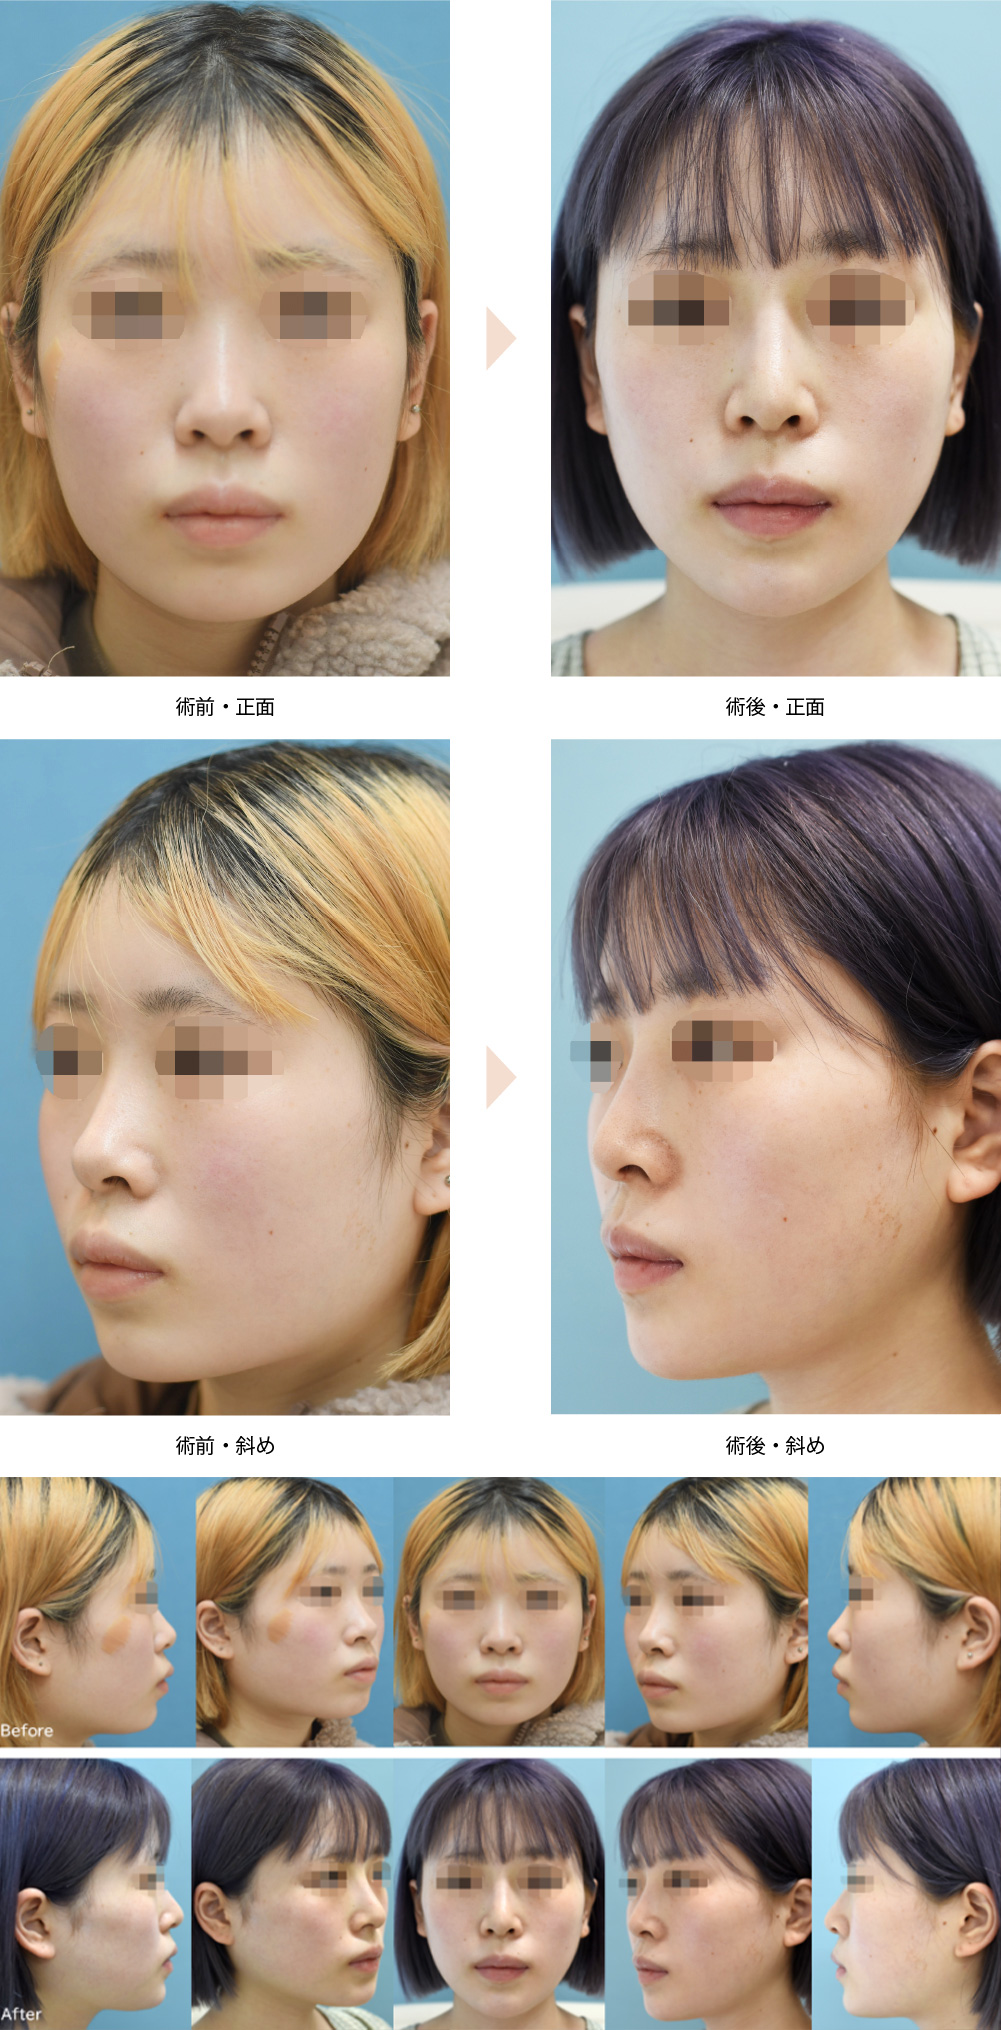 Vライン形成術（小顔整形）（エラ張りが目立つ方の小顔整形）の症例写真・ビフォーアフター